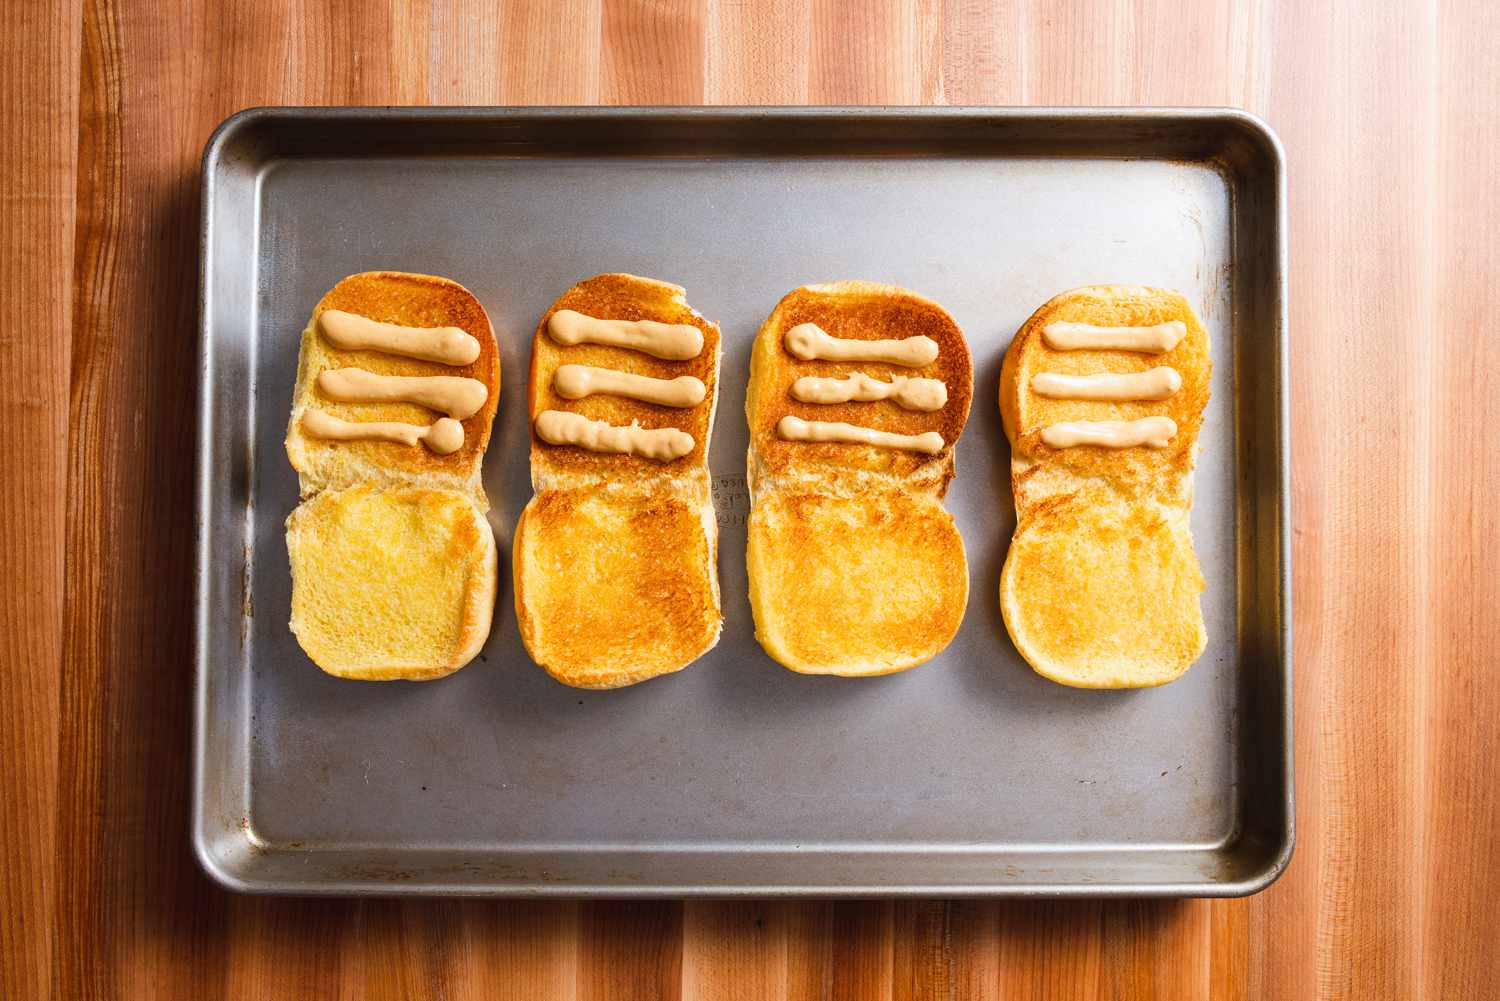 四个烤好的汉堡面包放在烤盘上，每个面包上都有三行自制的Shack酱汁。